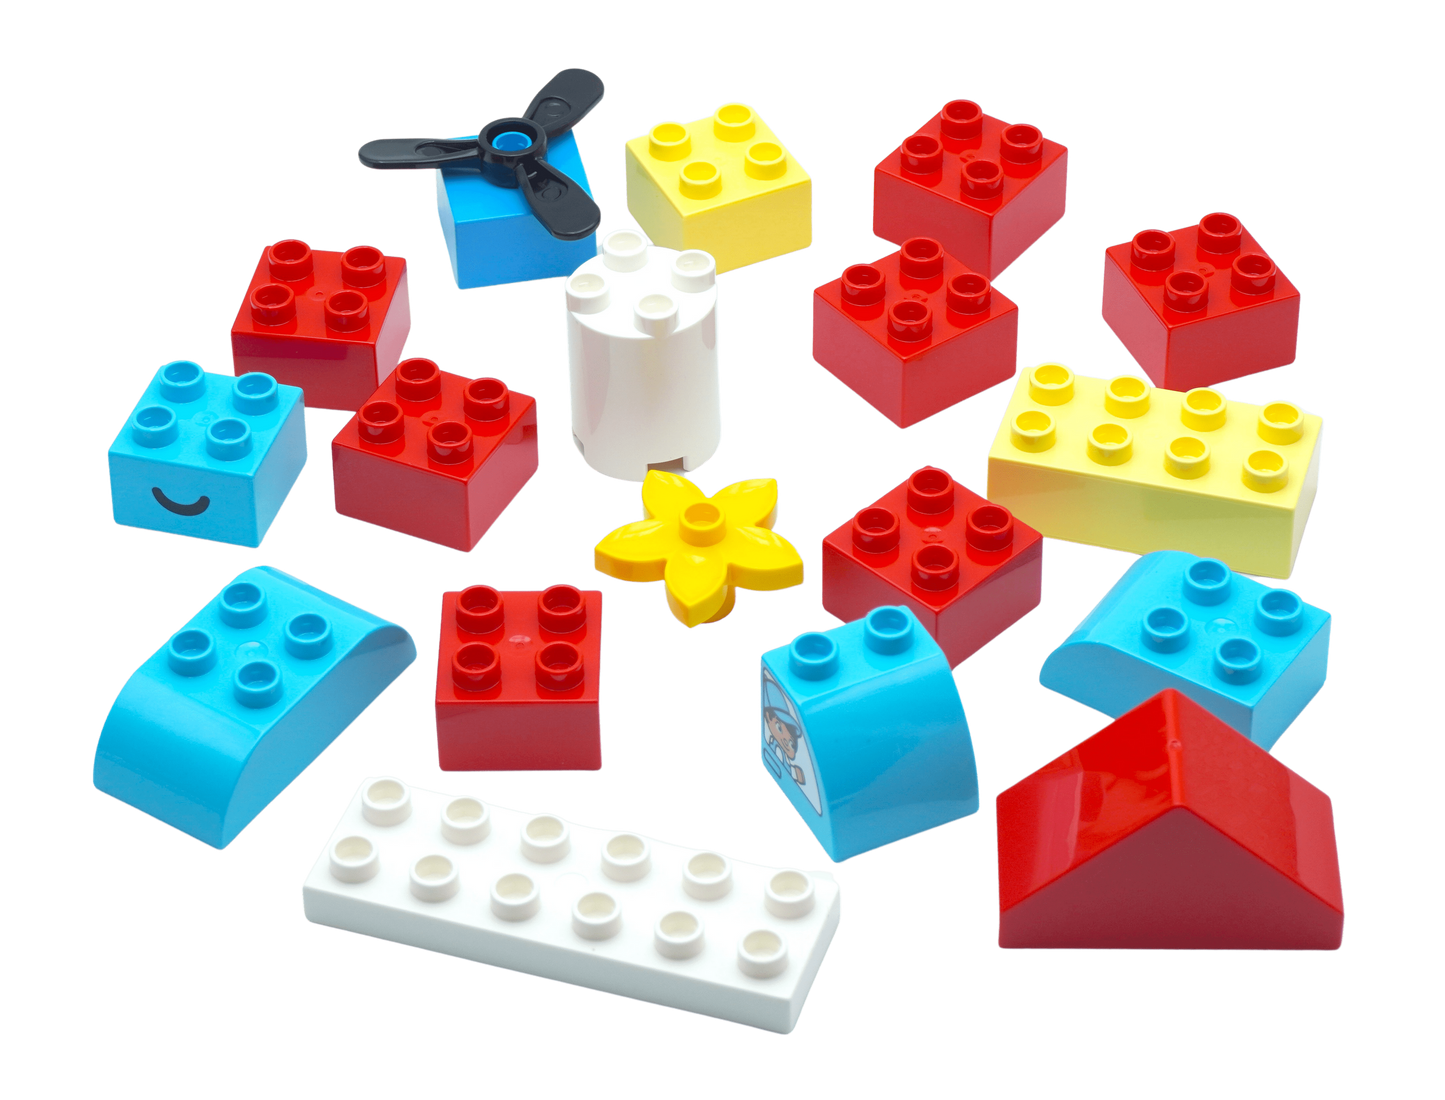 LEGO® DUPLO® Steine Sondersteine Bunt Gemischt NEU! Menge 50x